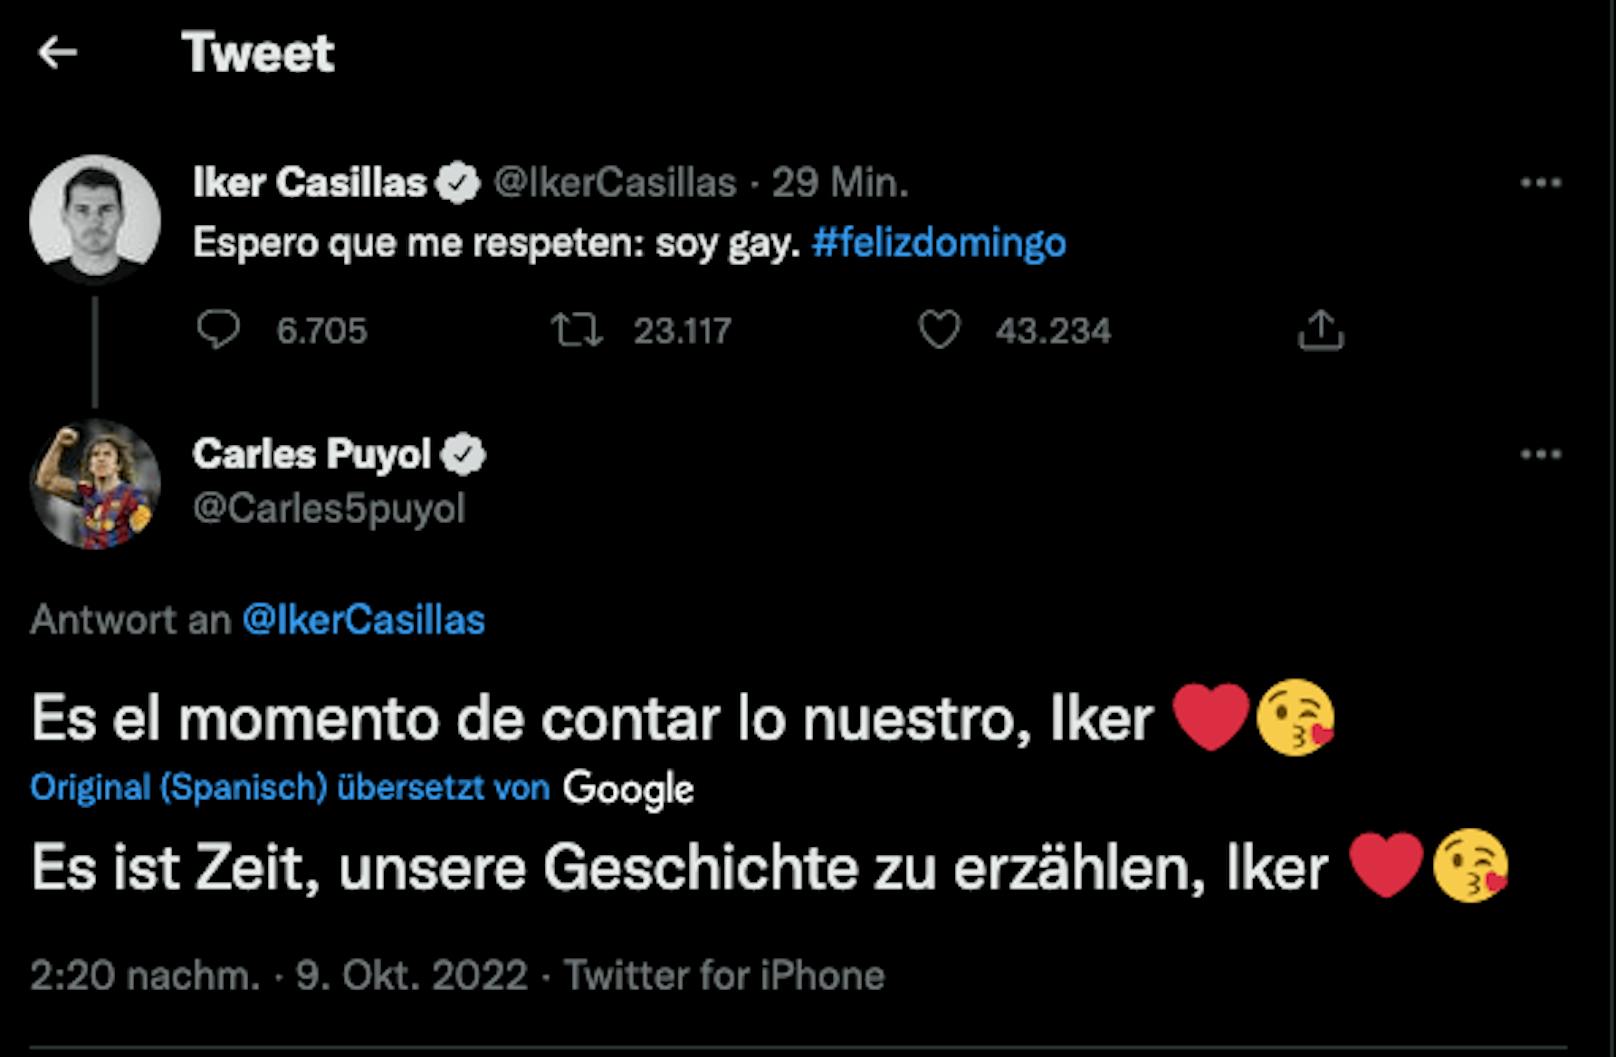 Der Casillas-Tweet und der Kommentar von Carles Puyol.